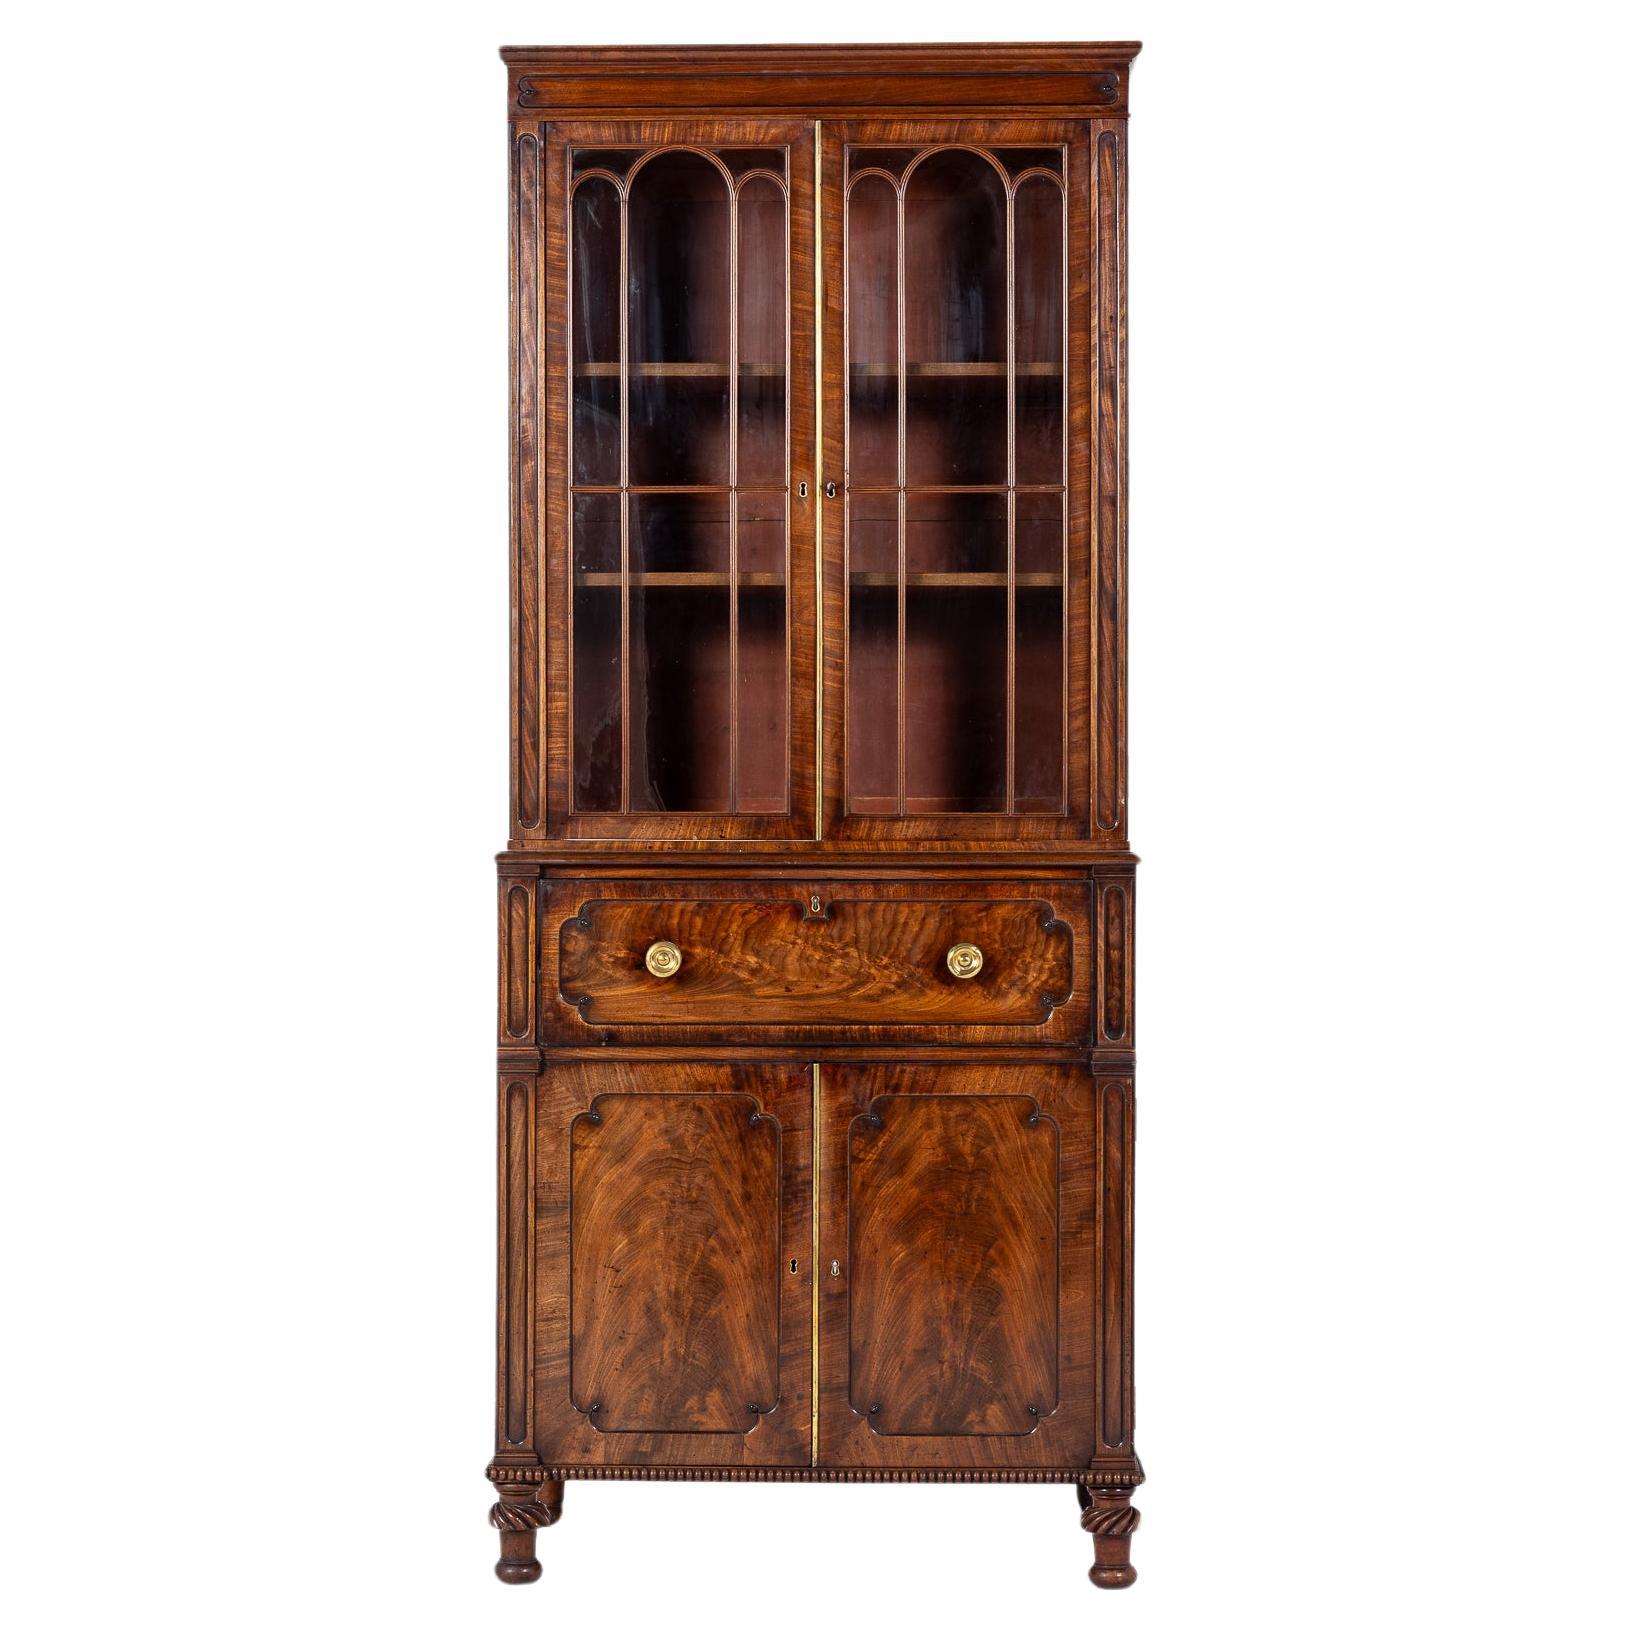 Late Regency Period Mahogany Secretaire Bookcase Circa 1825-30